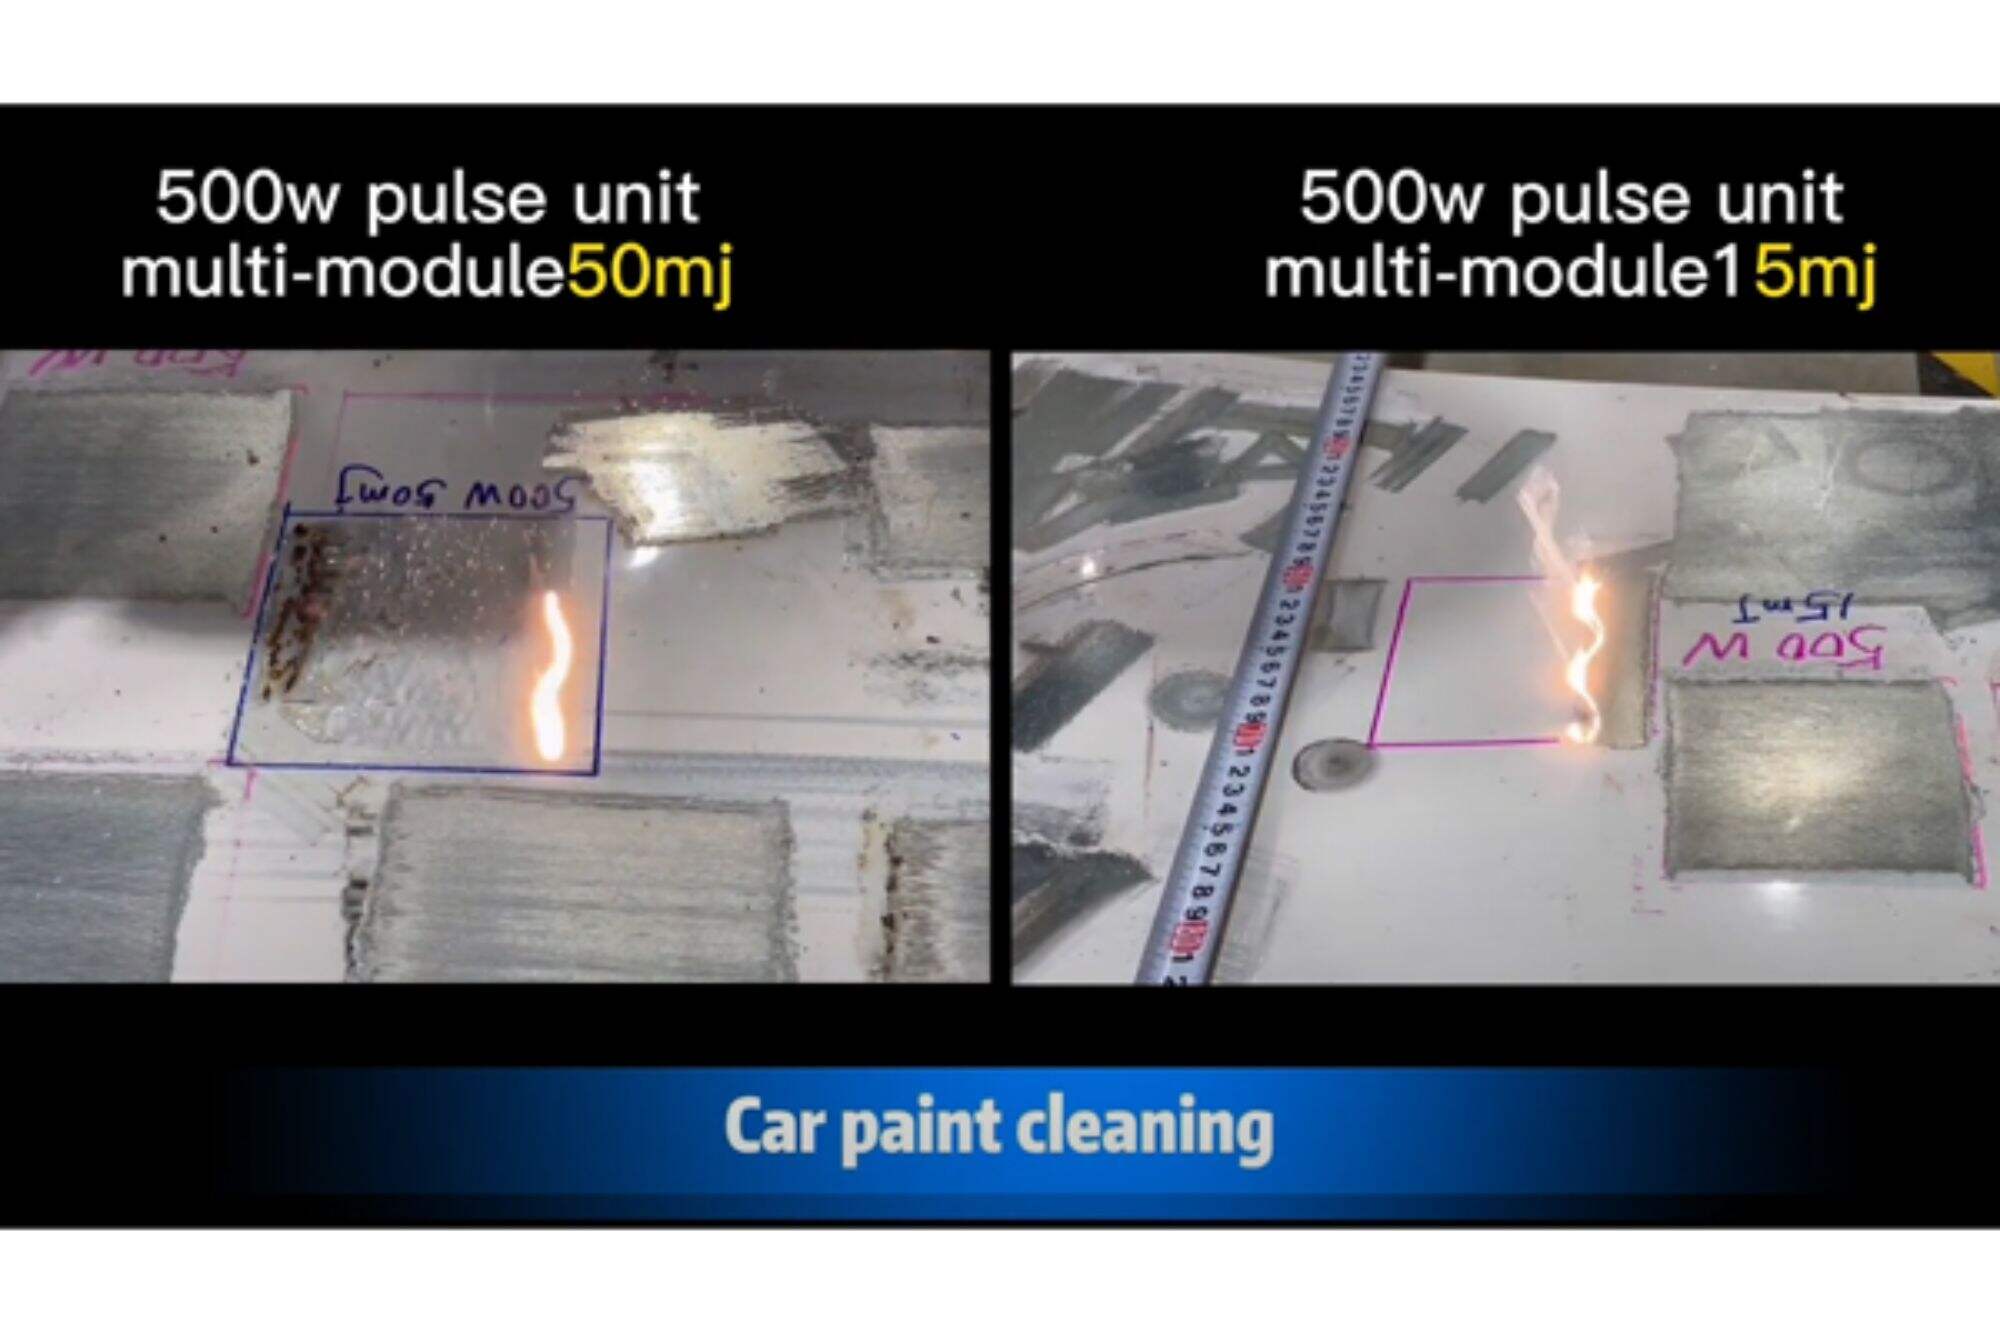 50mj vs 15mj 500w pulsreinigingsmachine voor het reinigen van autolak